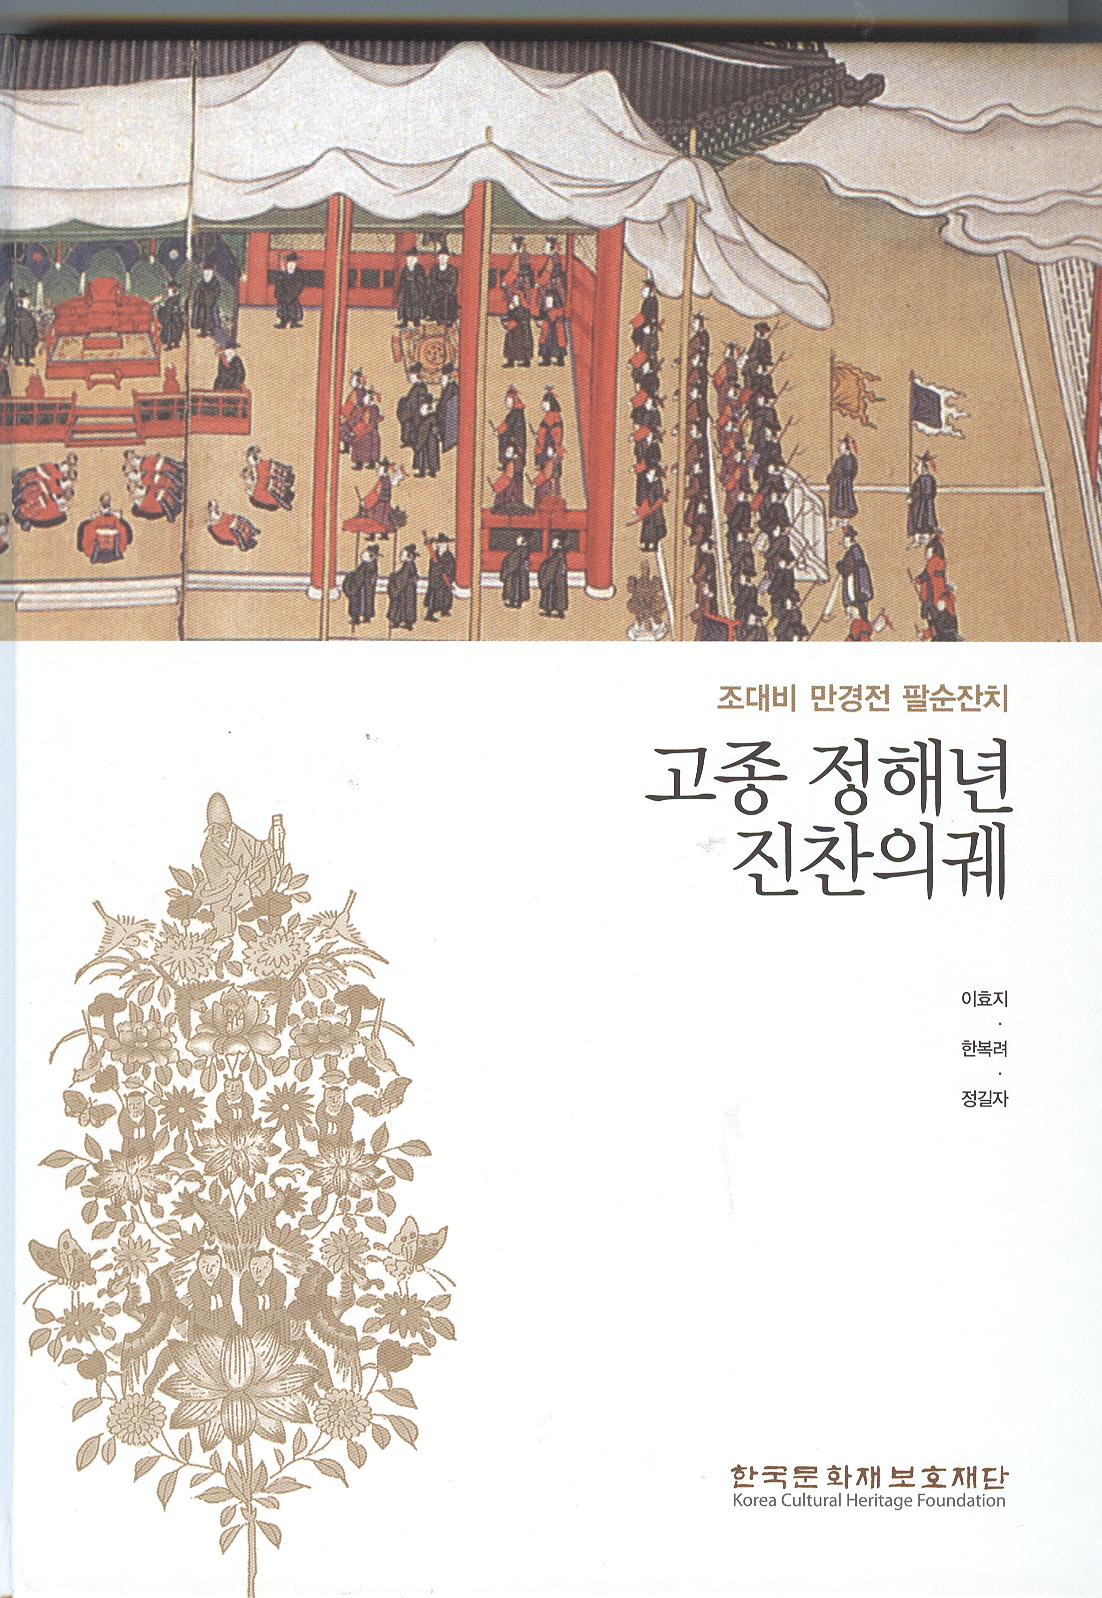 조선시대 궁중잔치 이렇게 펼쳐졌다!